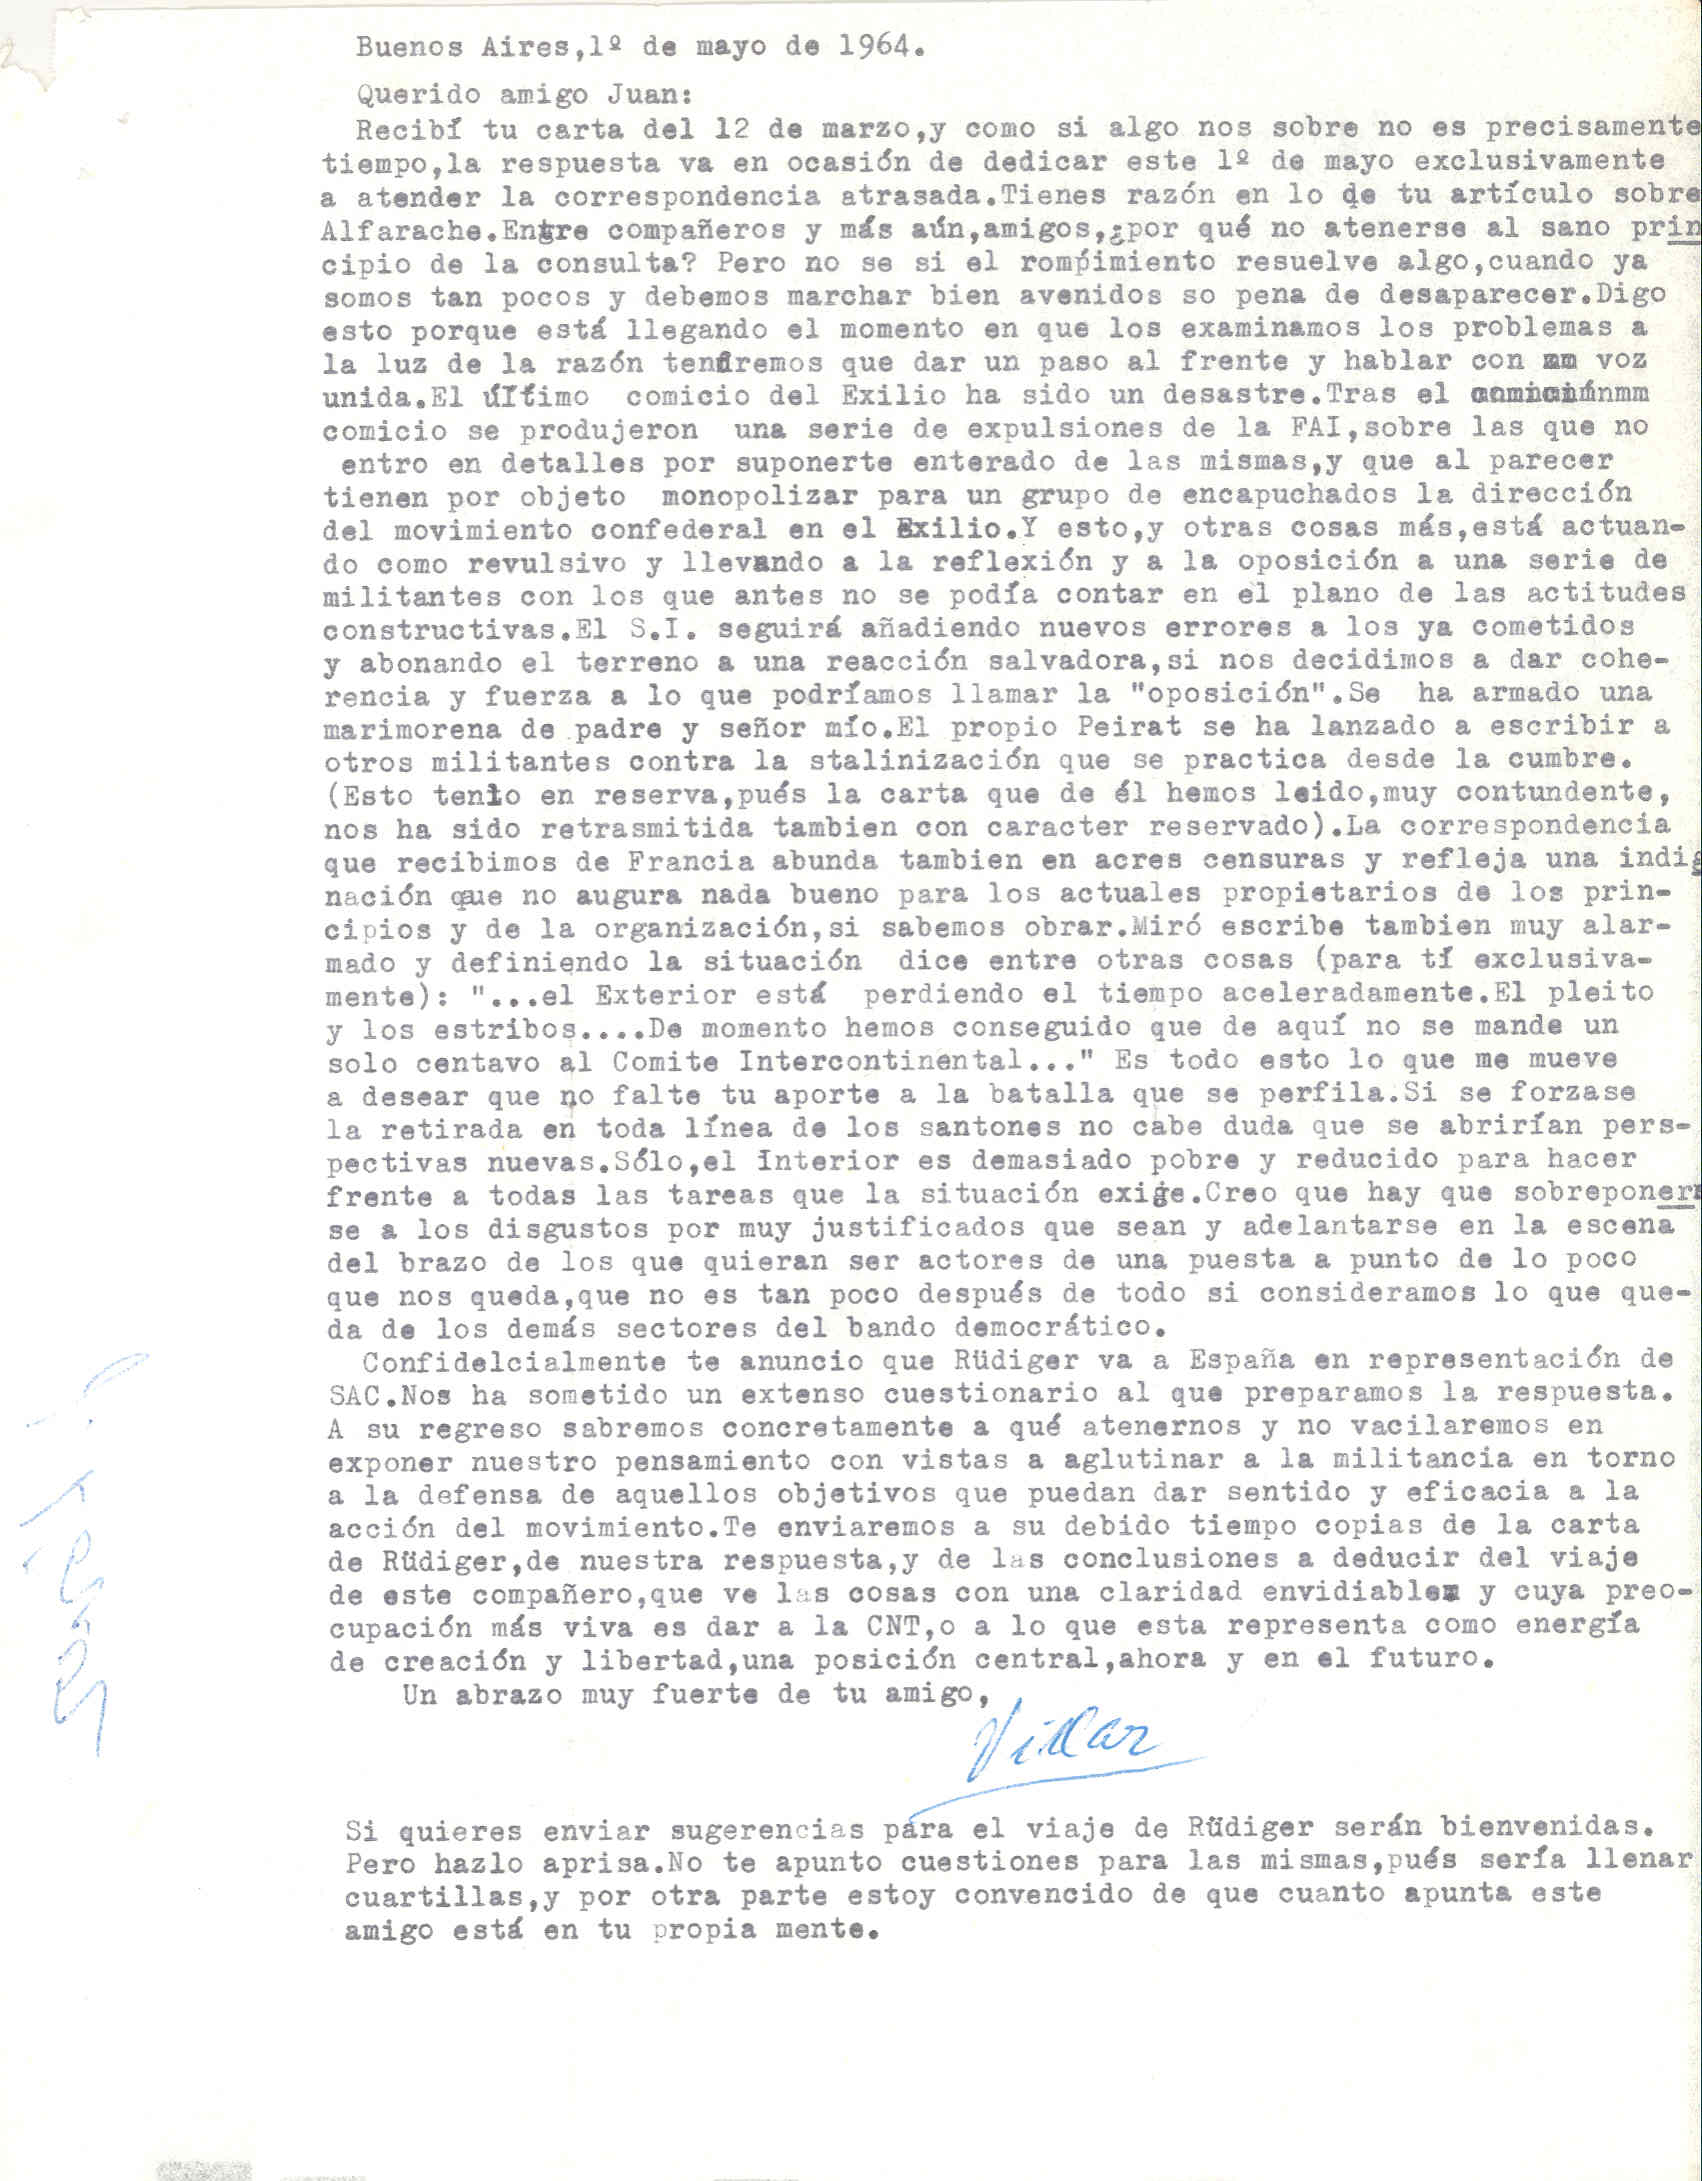 Carta de Manuel Villar sobre la situación en España, las expulsiones de la FAI y los continuos errores del Secretariado Intercontinental